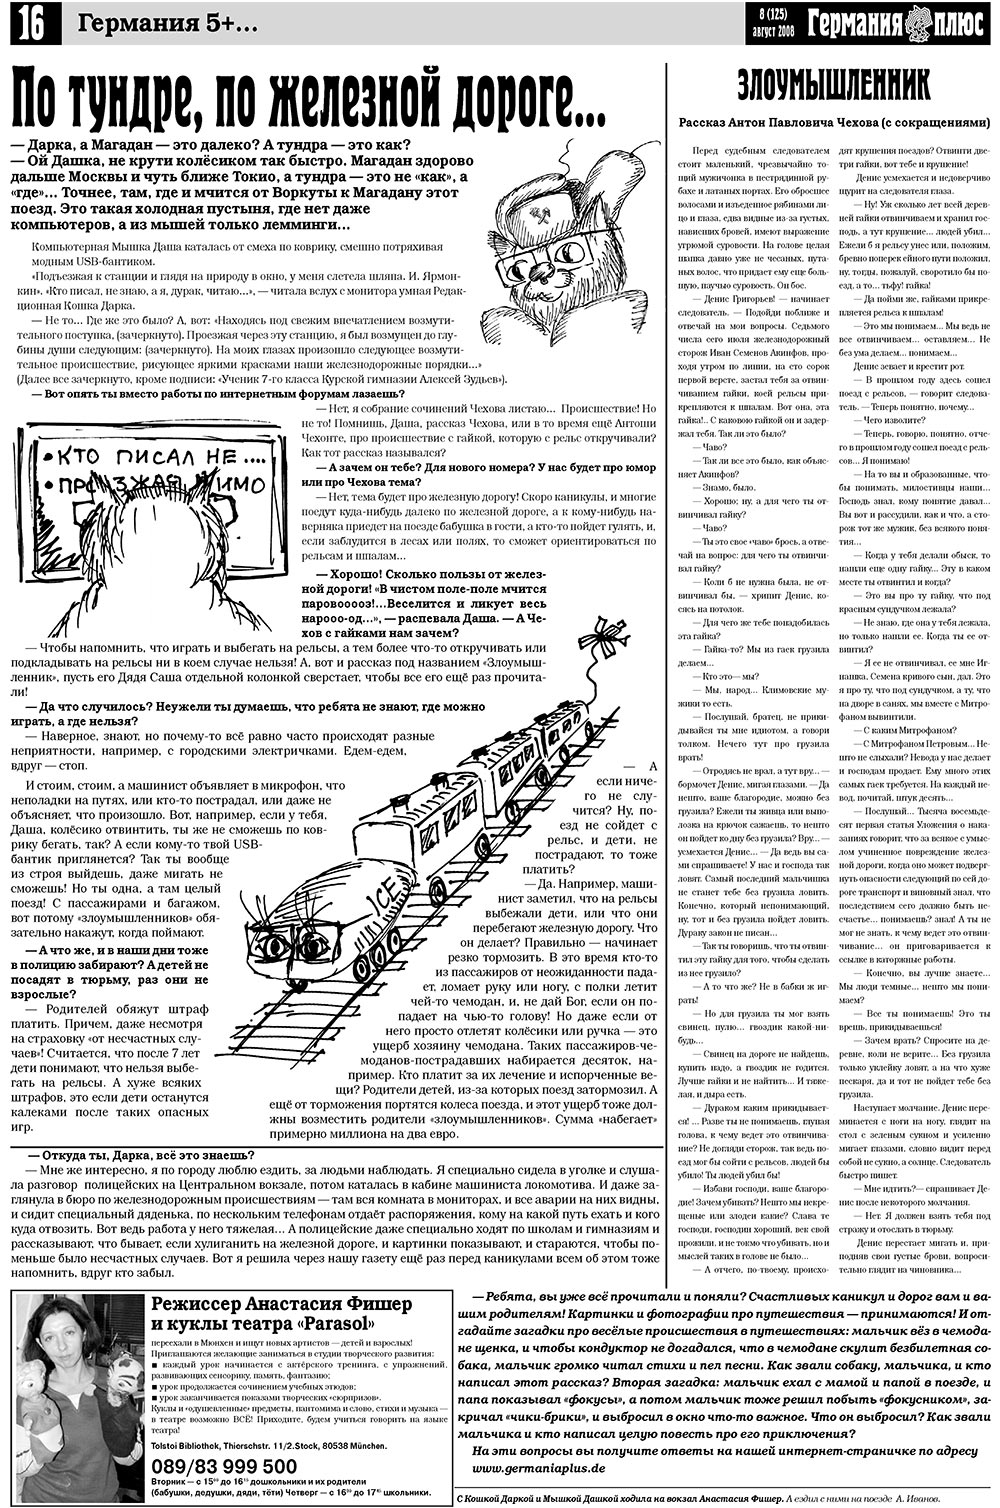 Германия плюс (газета). 2008 год, номер 8, стр. 20